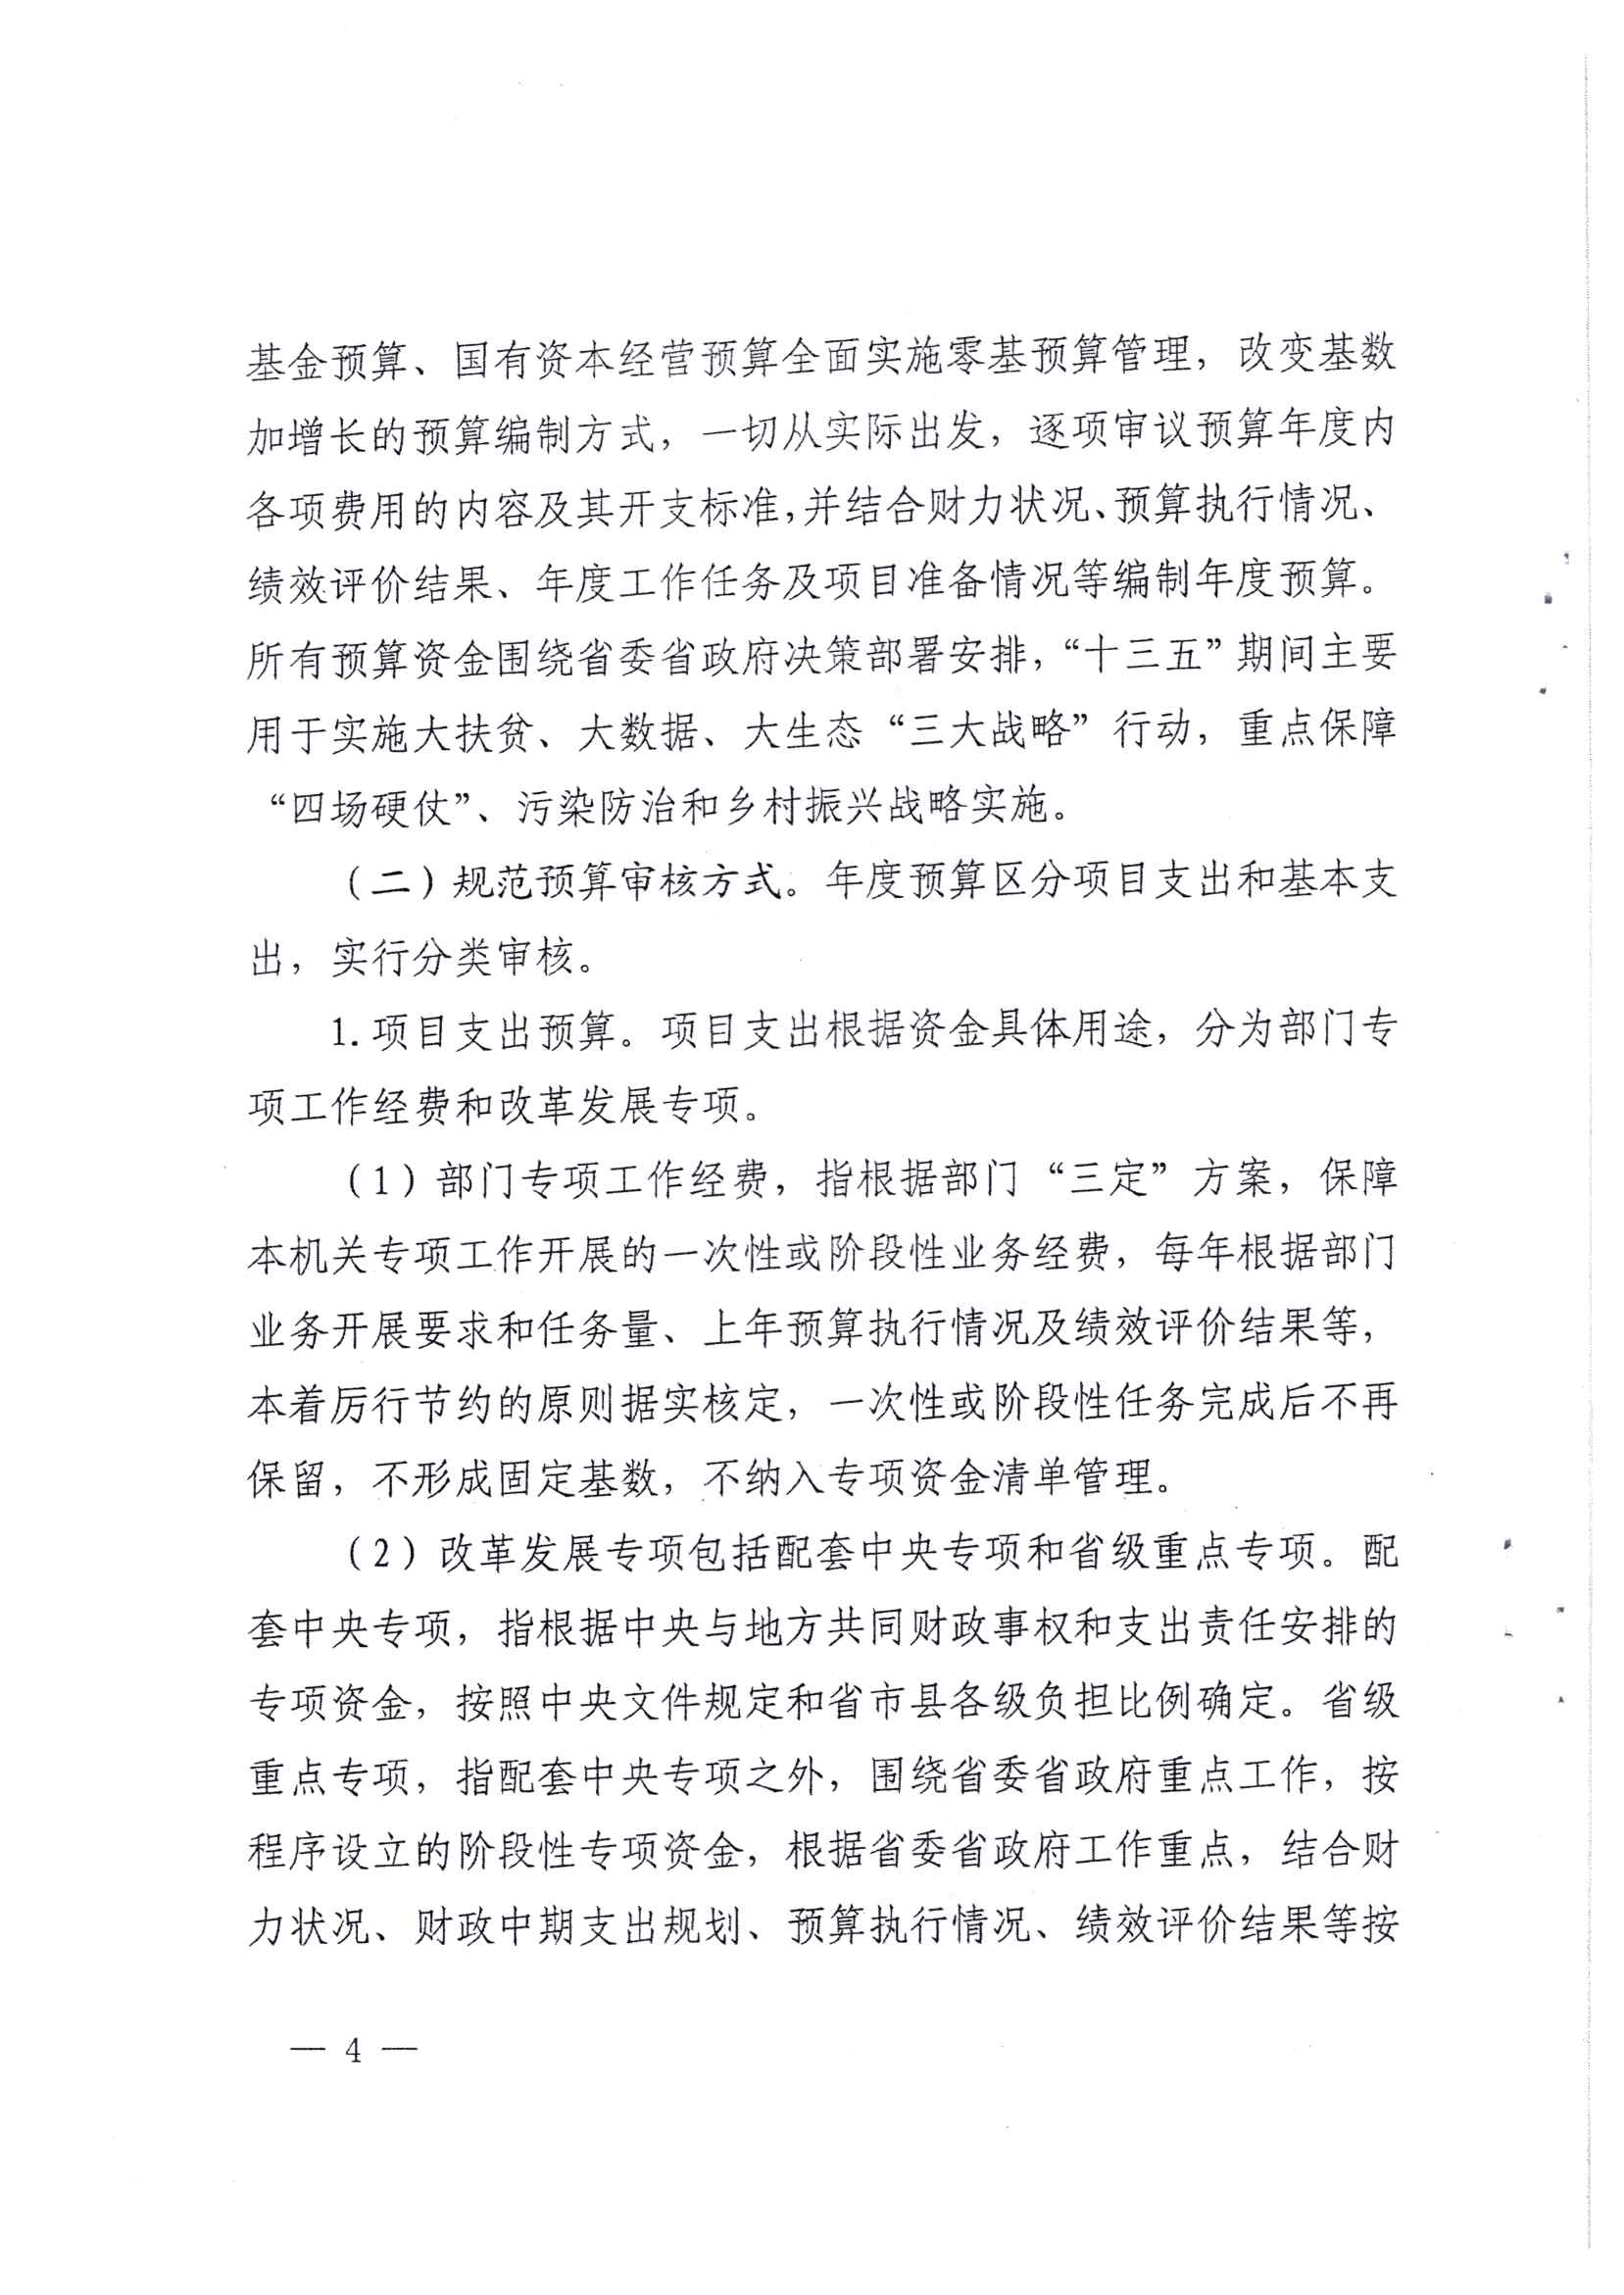 贵州省财政厅关于印发推进省级部门支出预算管理改革方案的通知_页面_4.jpg